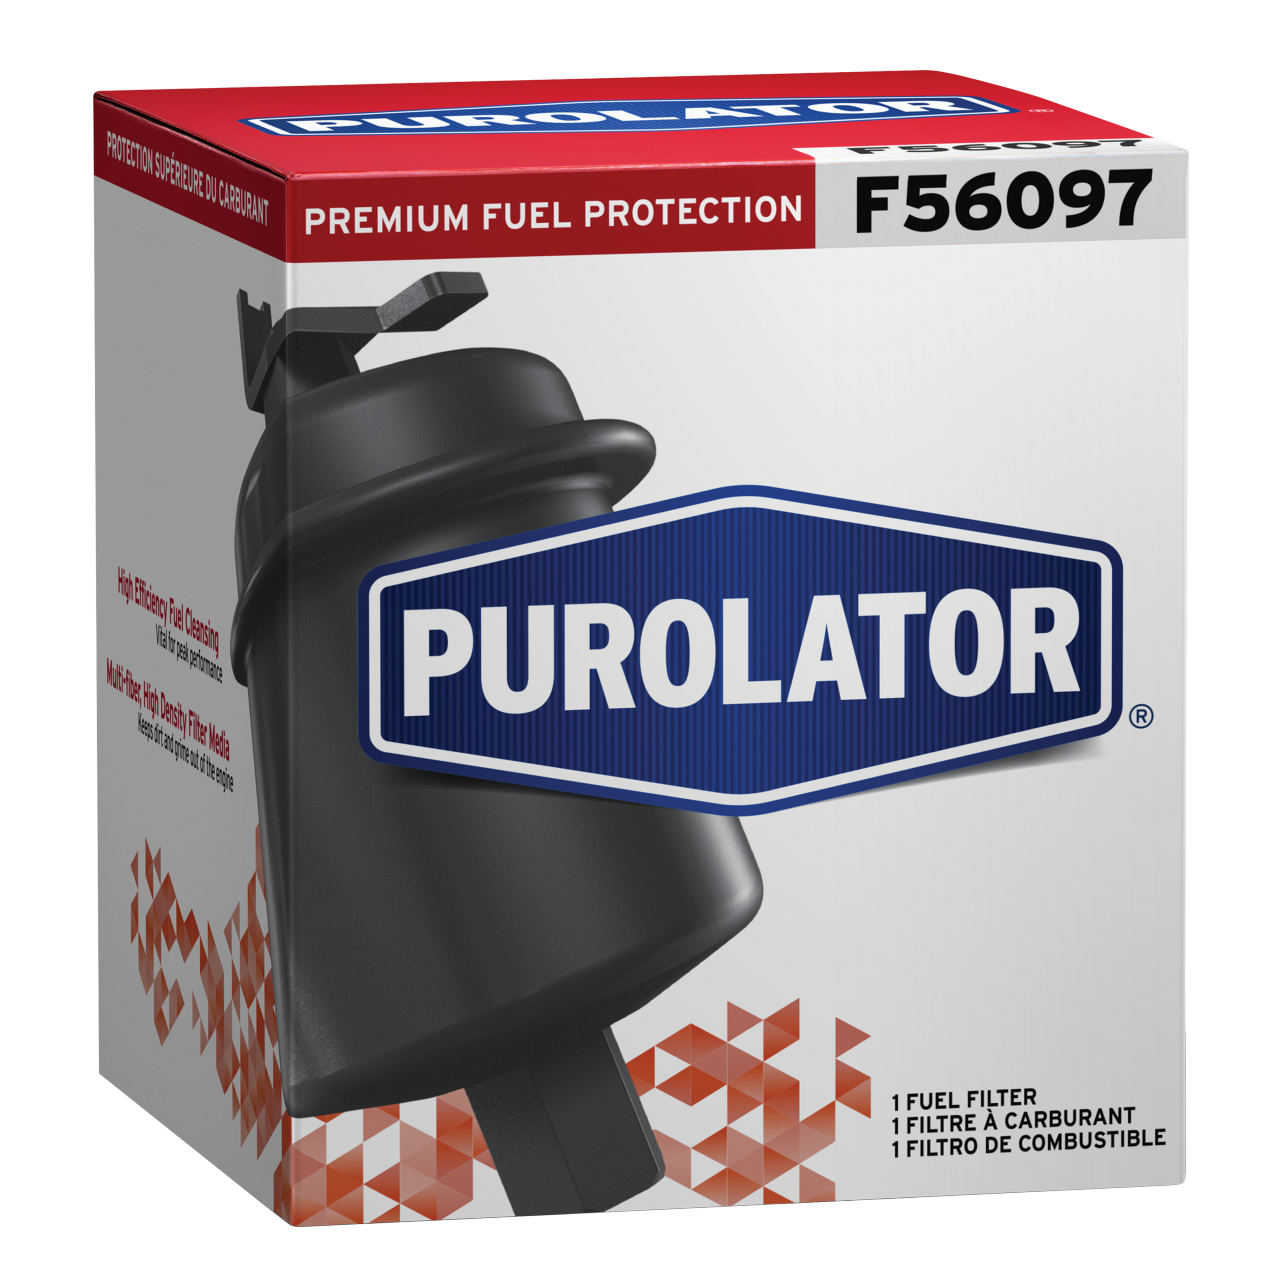 Protégez les pompes à carburant et les injecteurs de carburant contre les problèmes de moteur coûteux en remplaçant votre filtre à essence par un filtre à carburant Purolator.